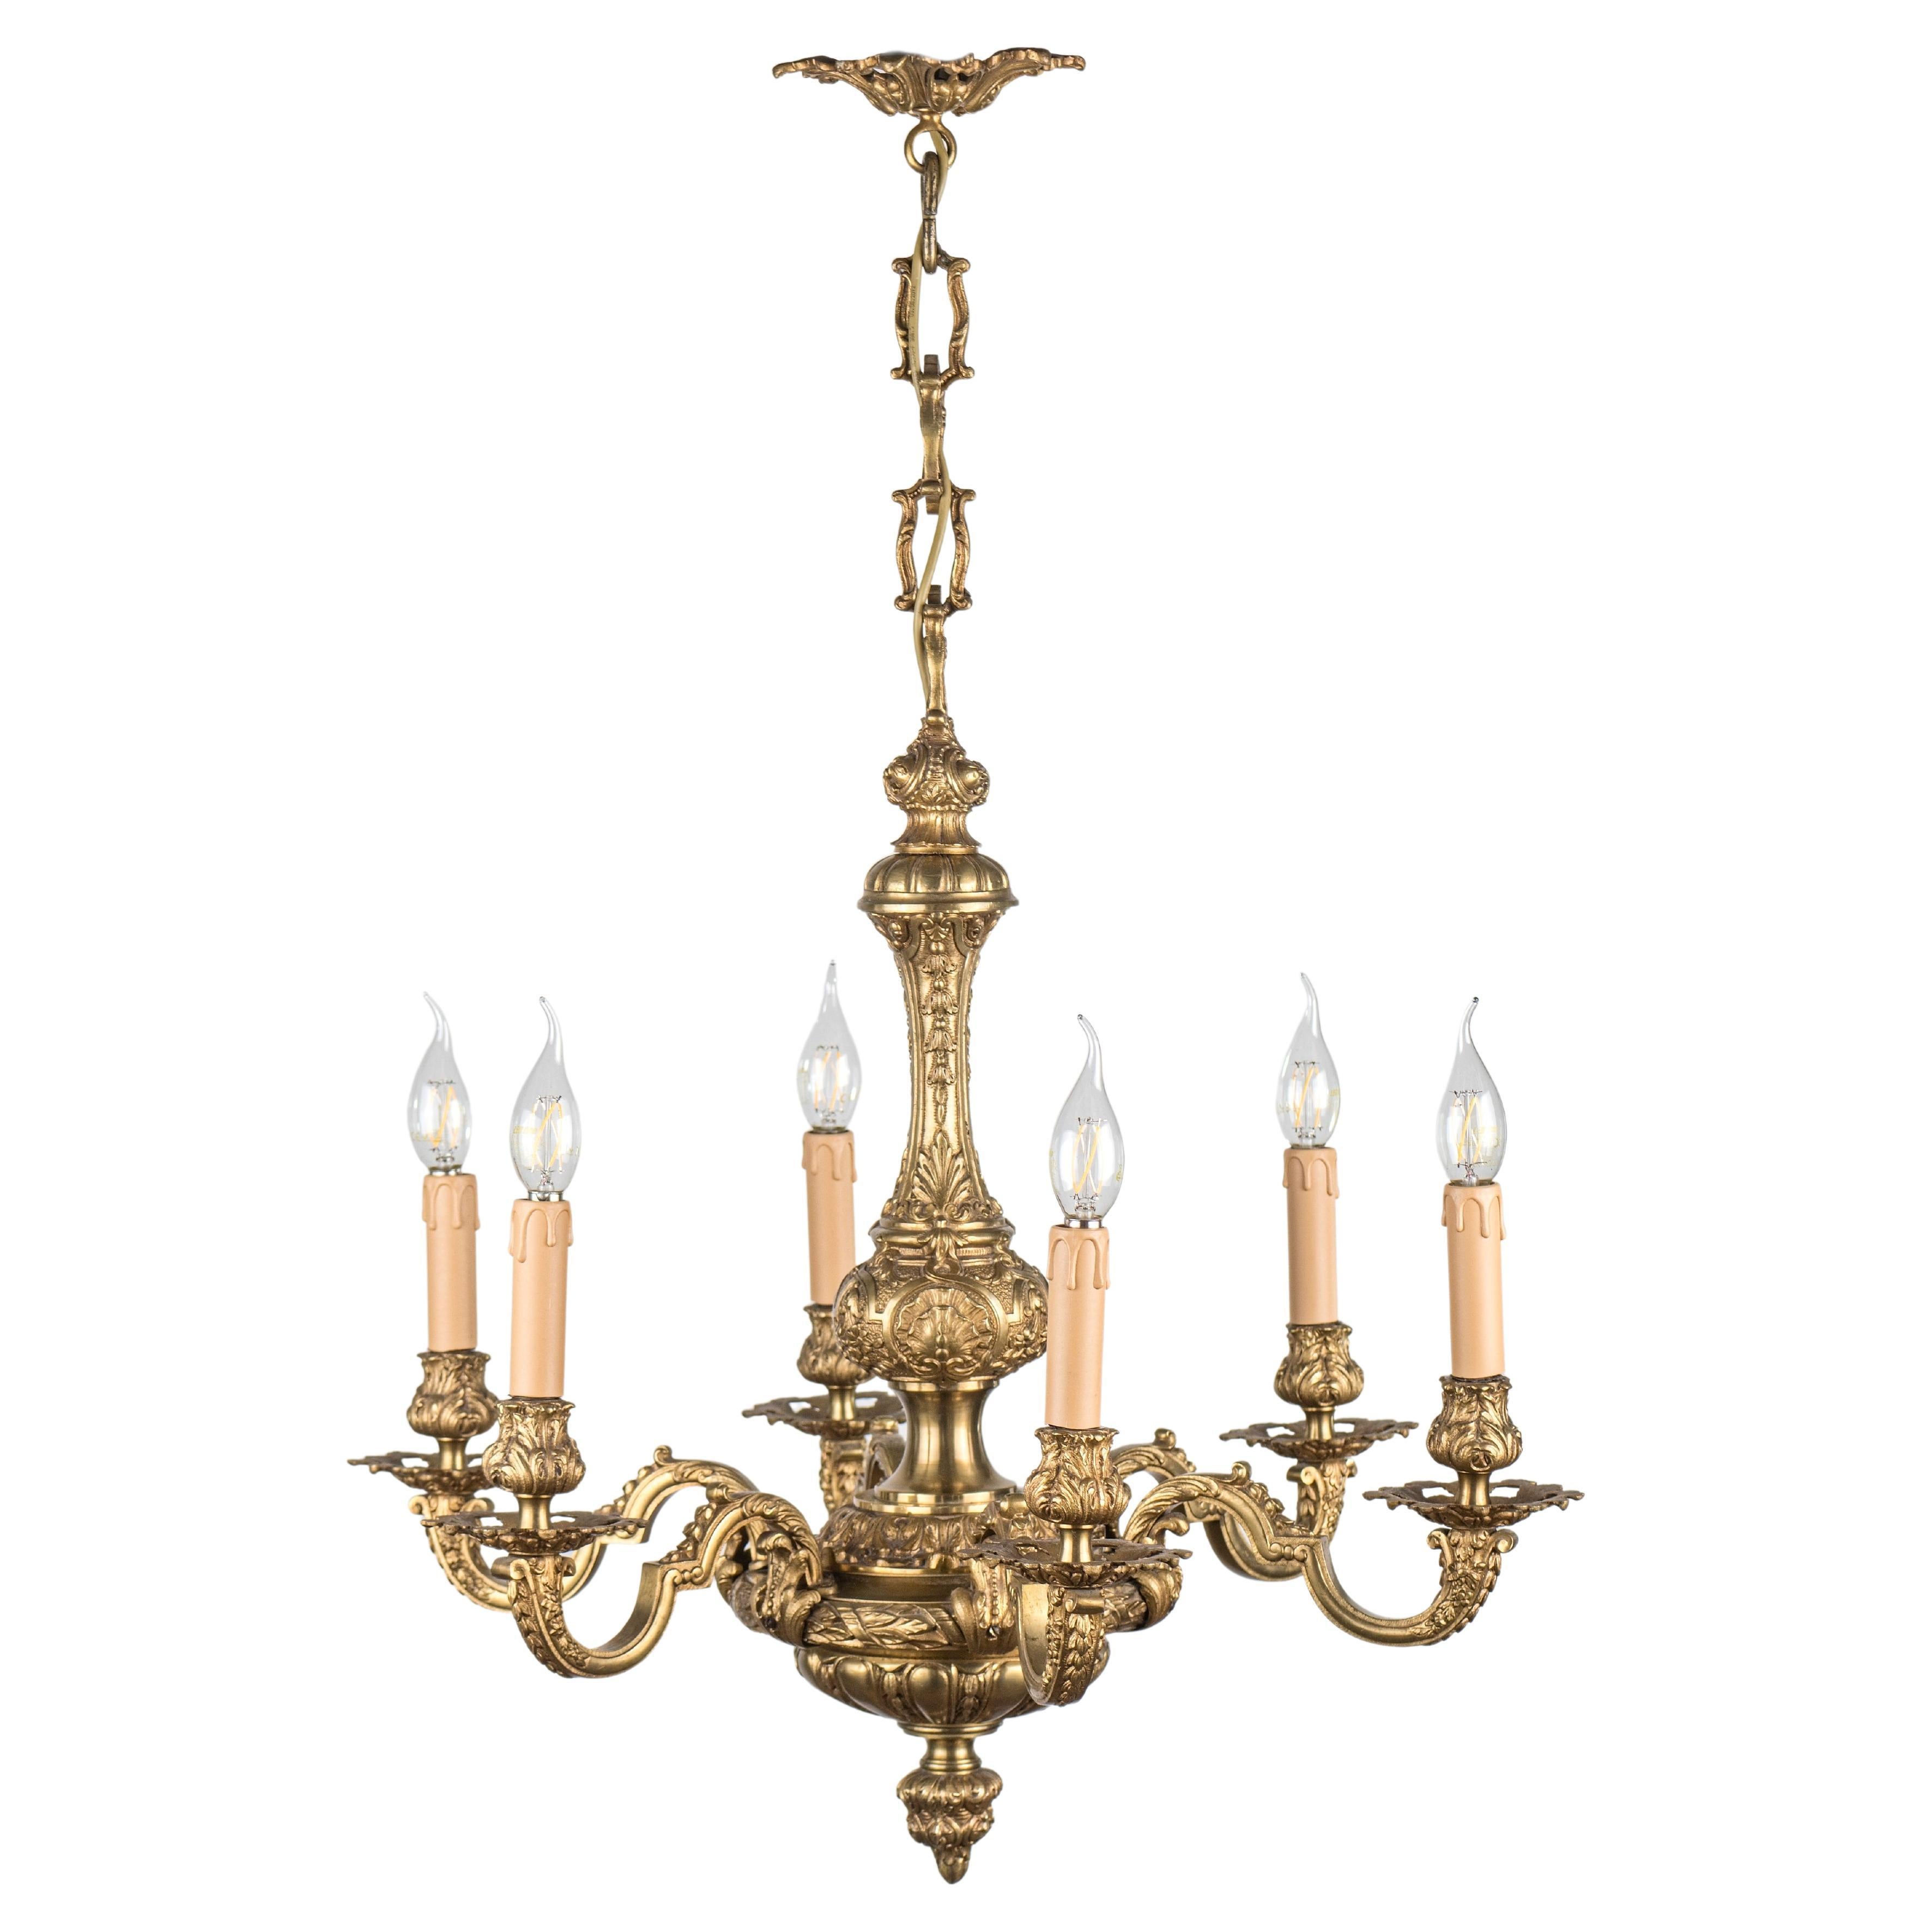 Antique Mazarin chandelier. Gilded bronze